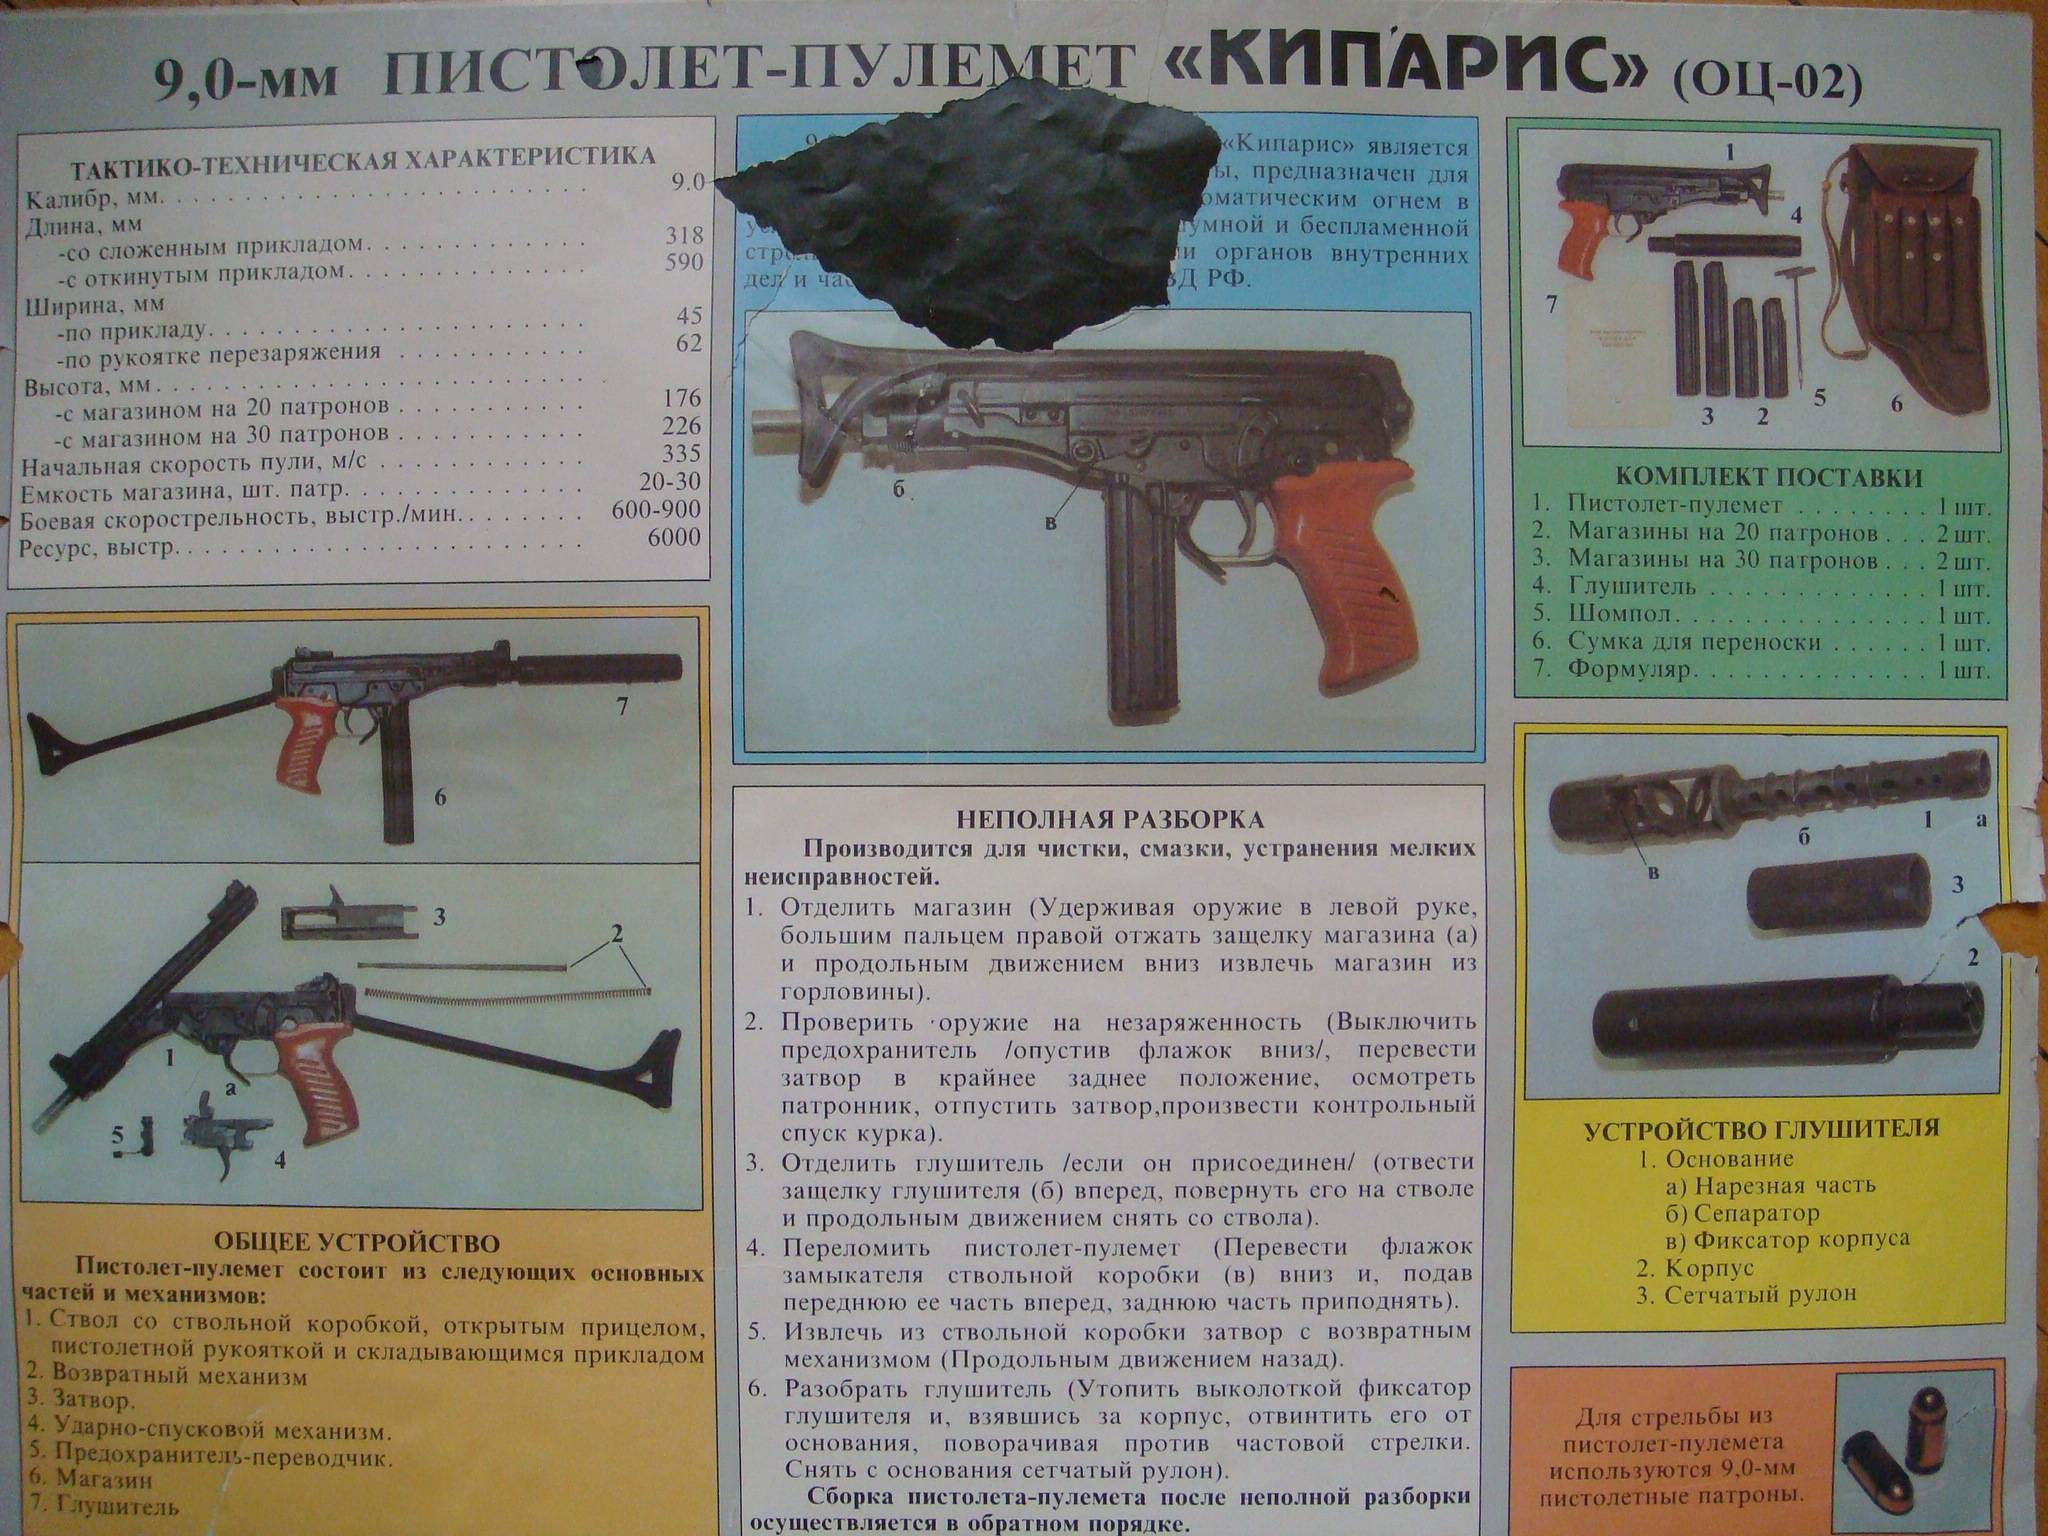 Ингрэм m10 и m11 — американский компактный пистолет-пулемет